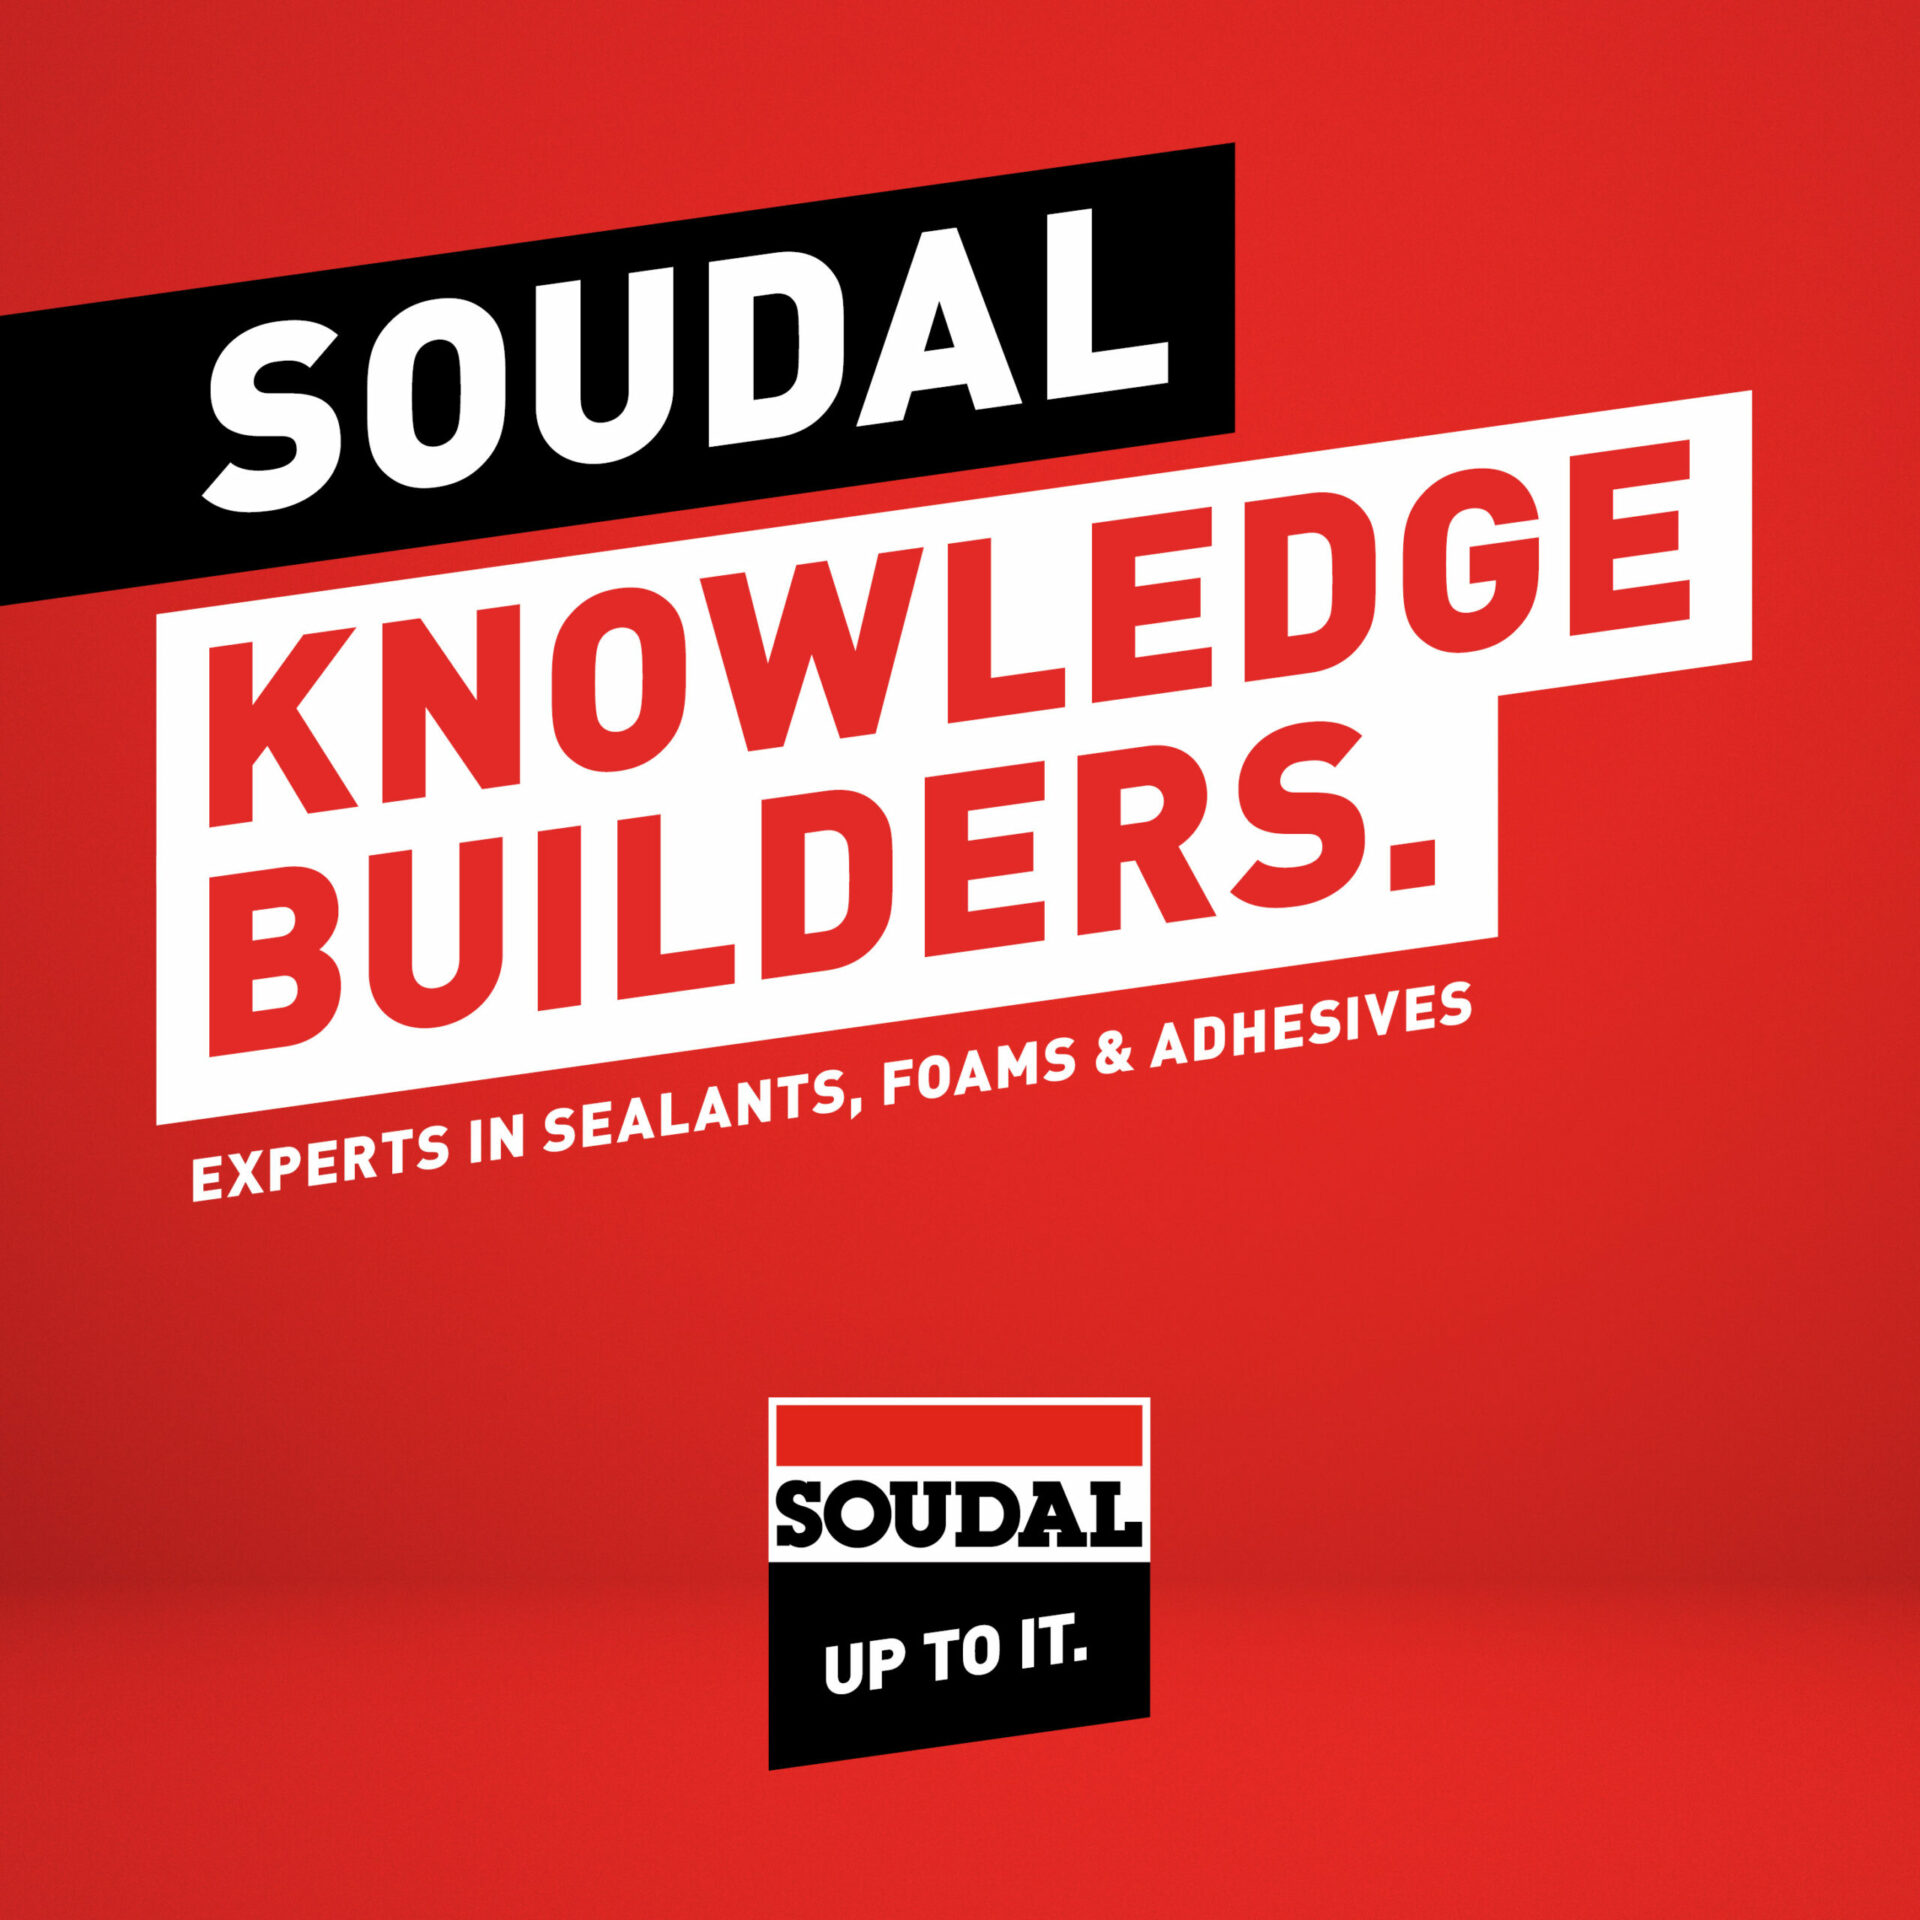 SOUDAL KNOWLEDGE BUILDERS